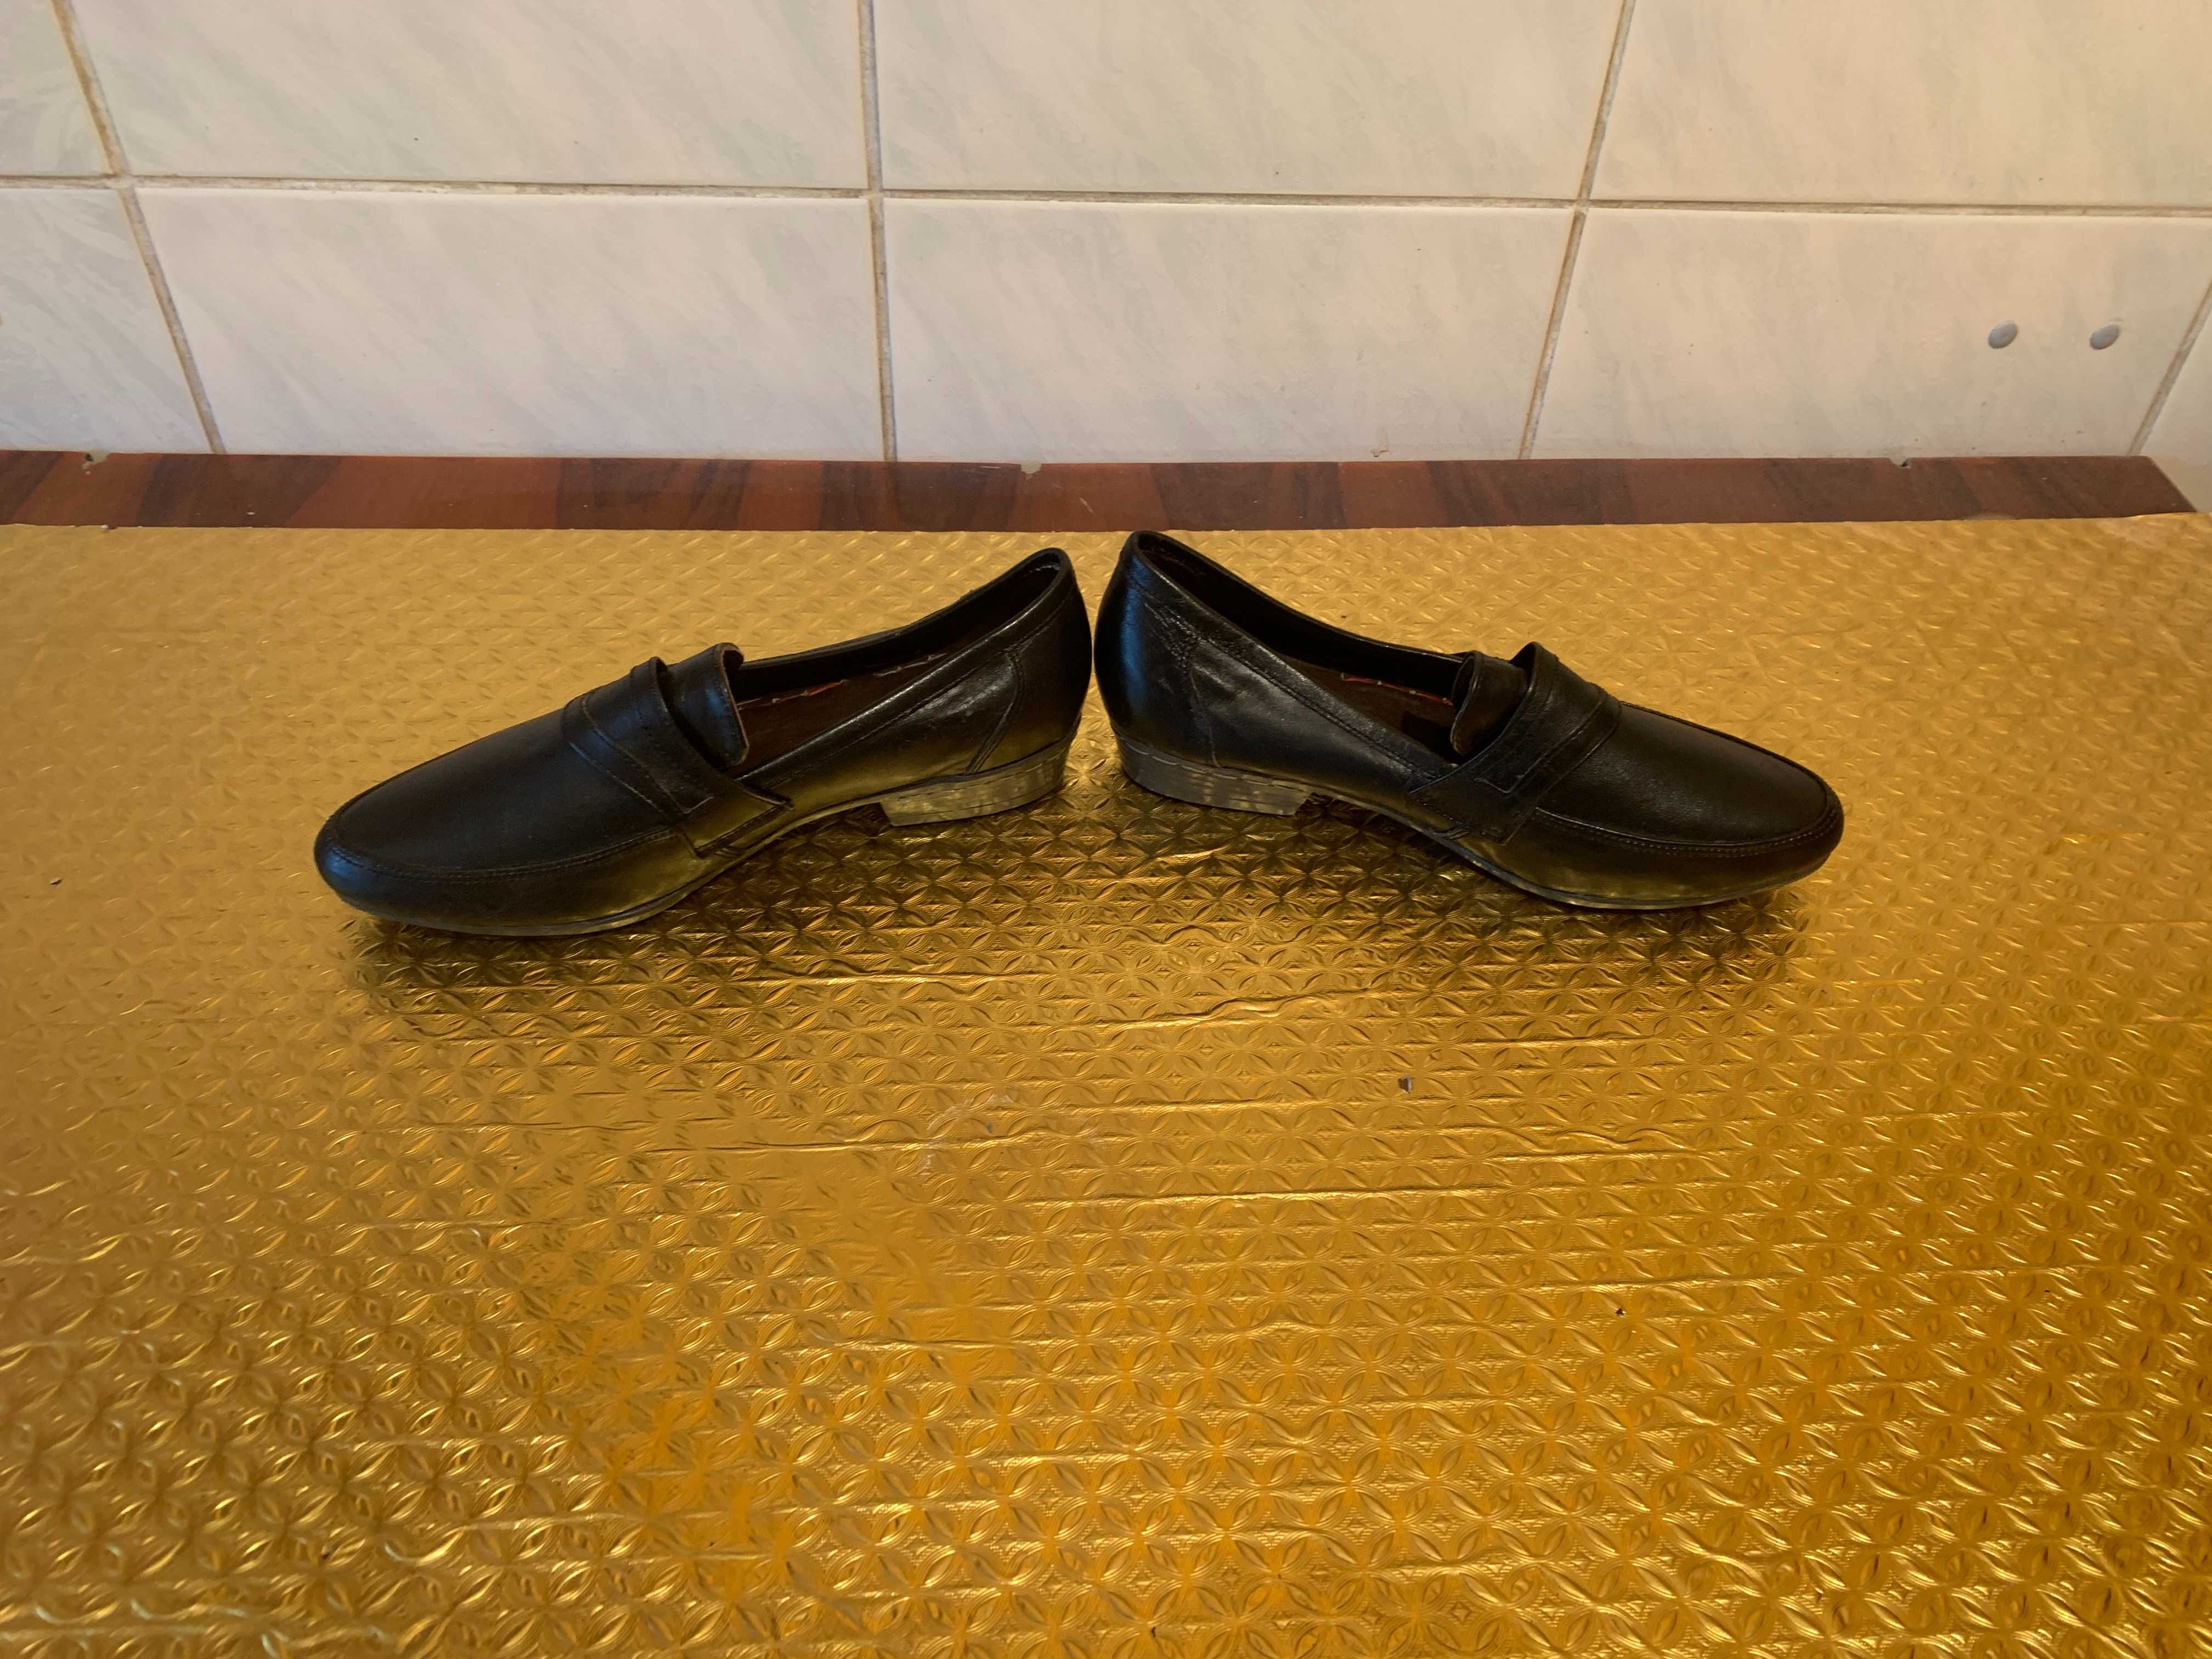 Продам туфли мужские из натуральной кожи чер. цвета (сделано в Турции)